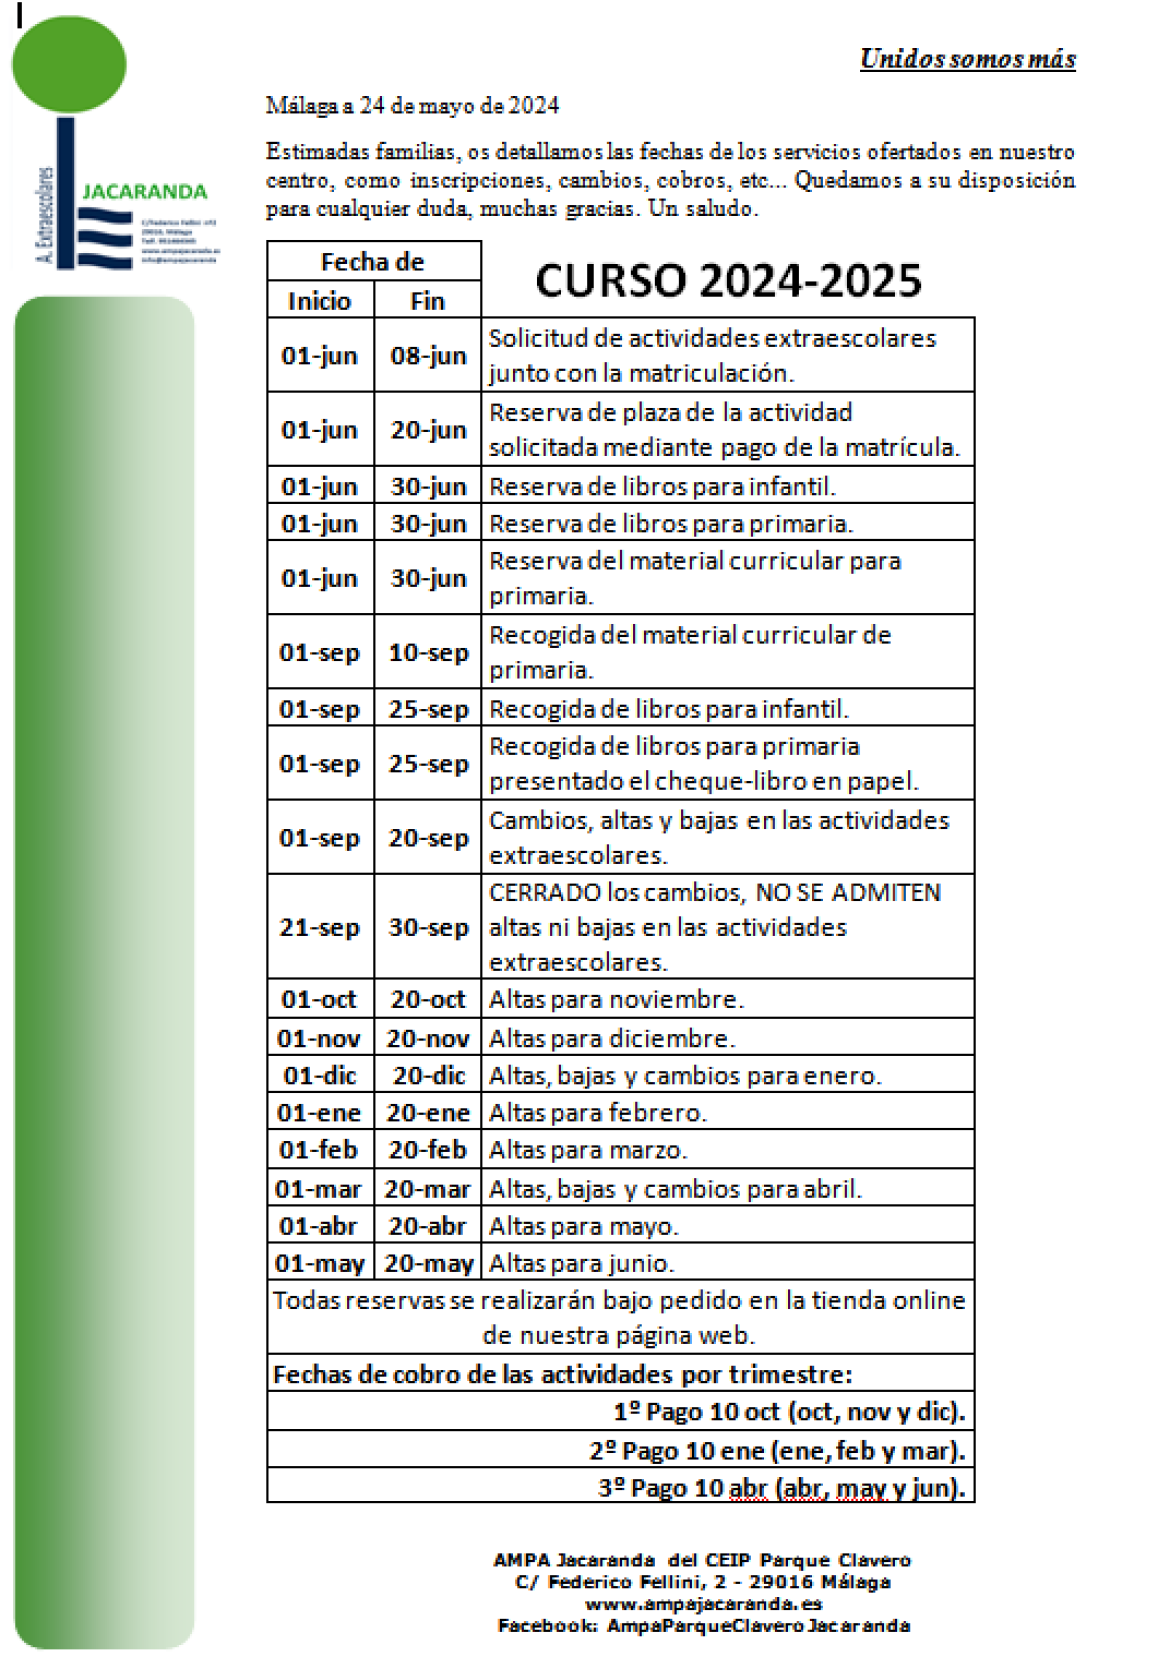 FECHAS CURSO 2024-2025